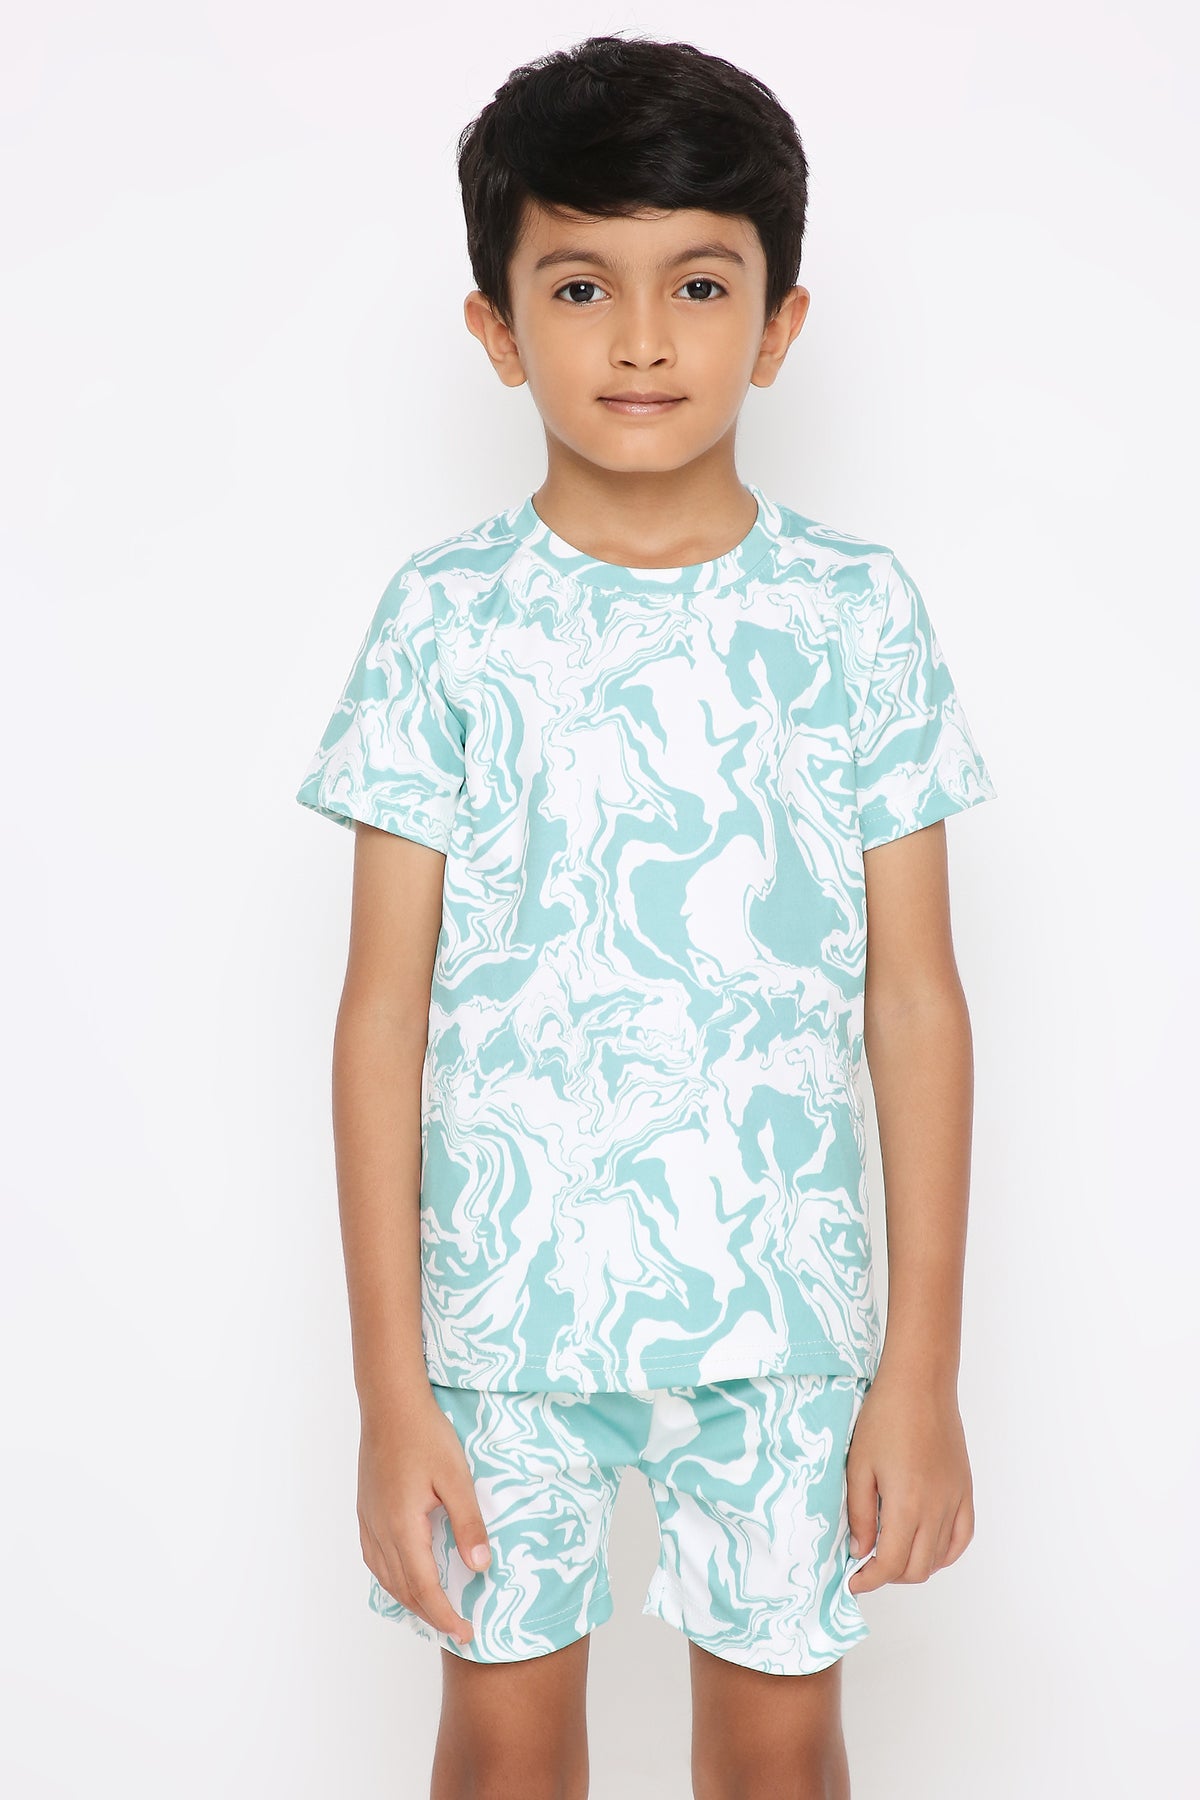 Aqua Blue Swirl T-shirt Cord-set